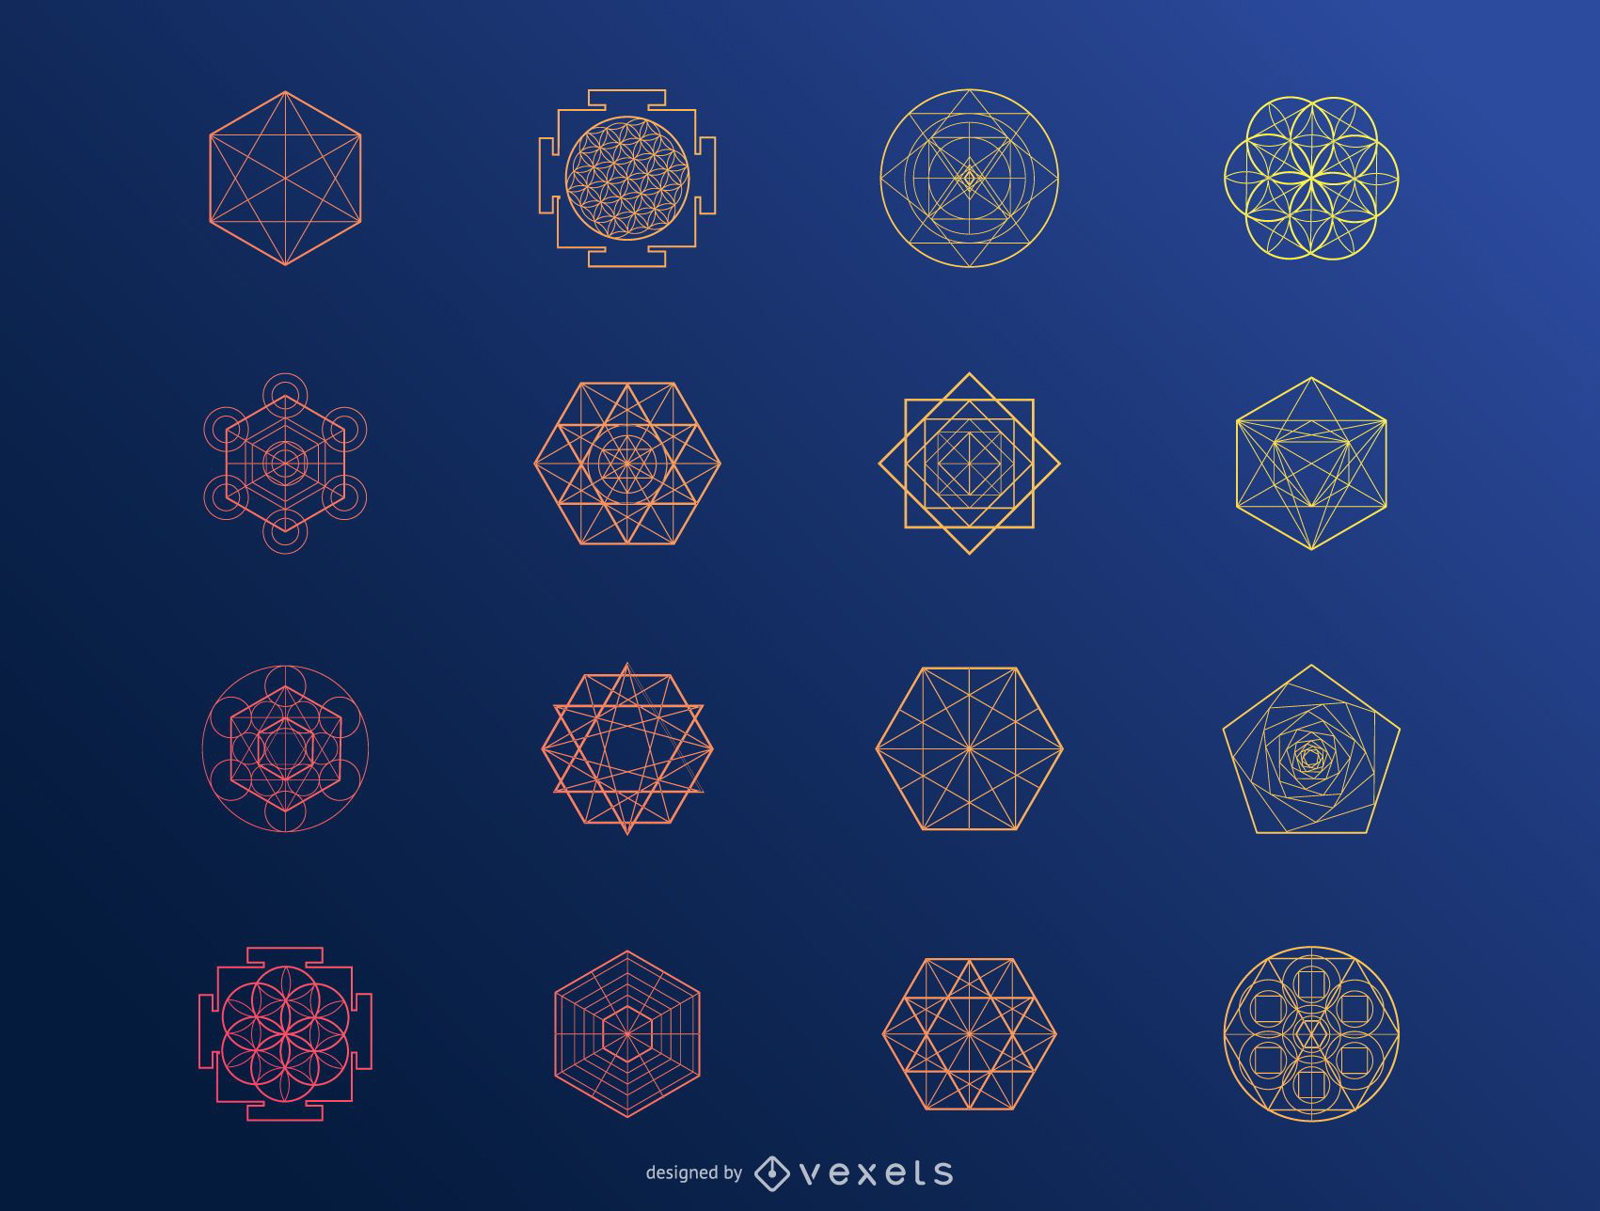 Hexagonal abstract elements set